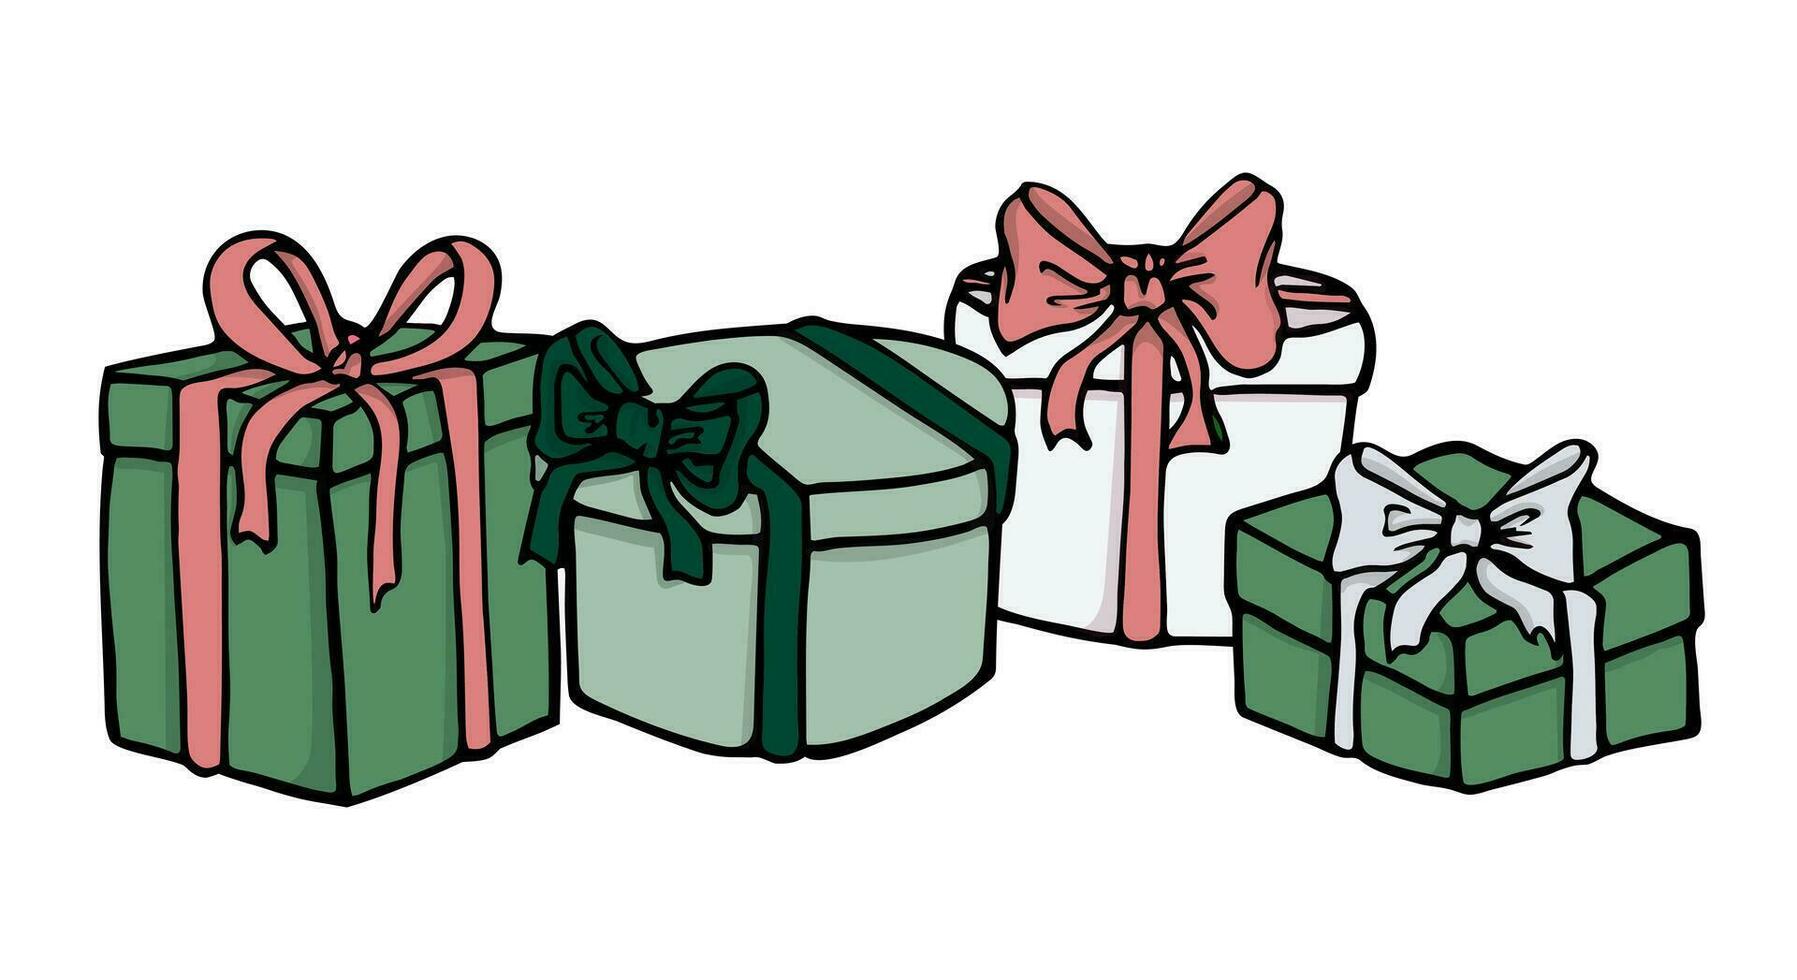 gåvor och presenterar för Semester och jul firande. isolerat födelsedag eller årsdag låda med omslag papper och band rosett. vektor i platt klotter stil. uppsättning av annorlunda lådor.